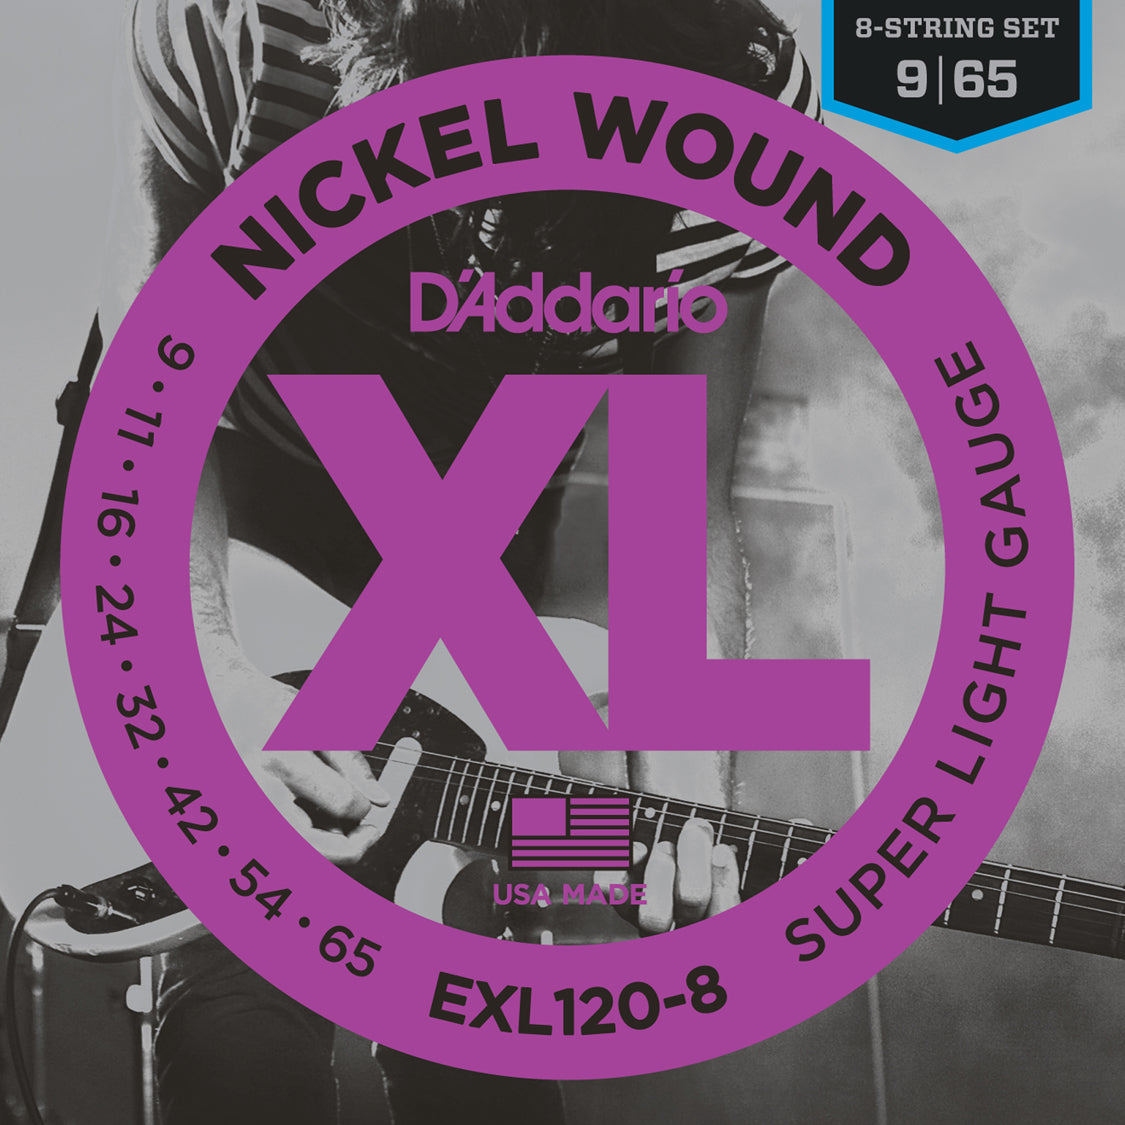 D'Addario EXL120-8 Nickel Wound 8-String Super Light 9-65